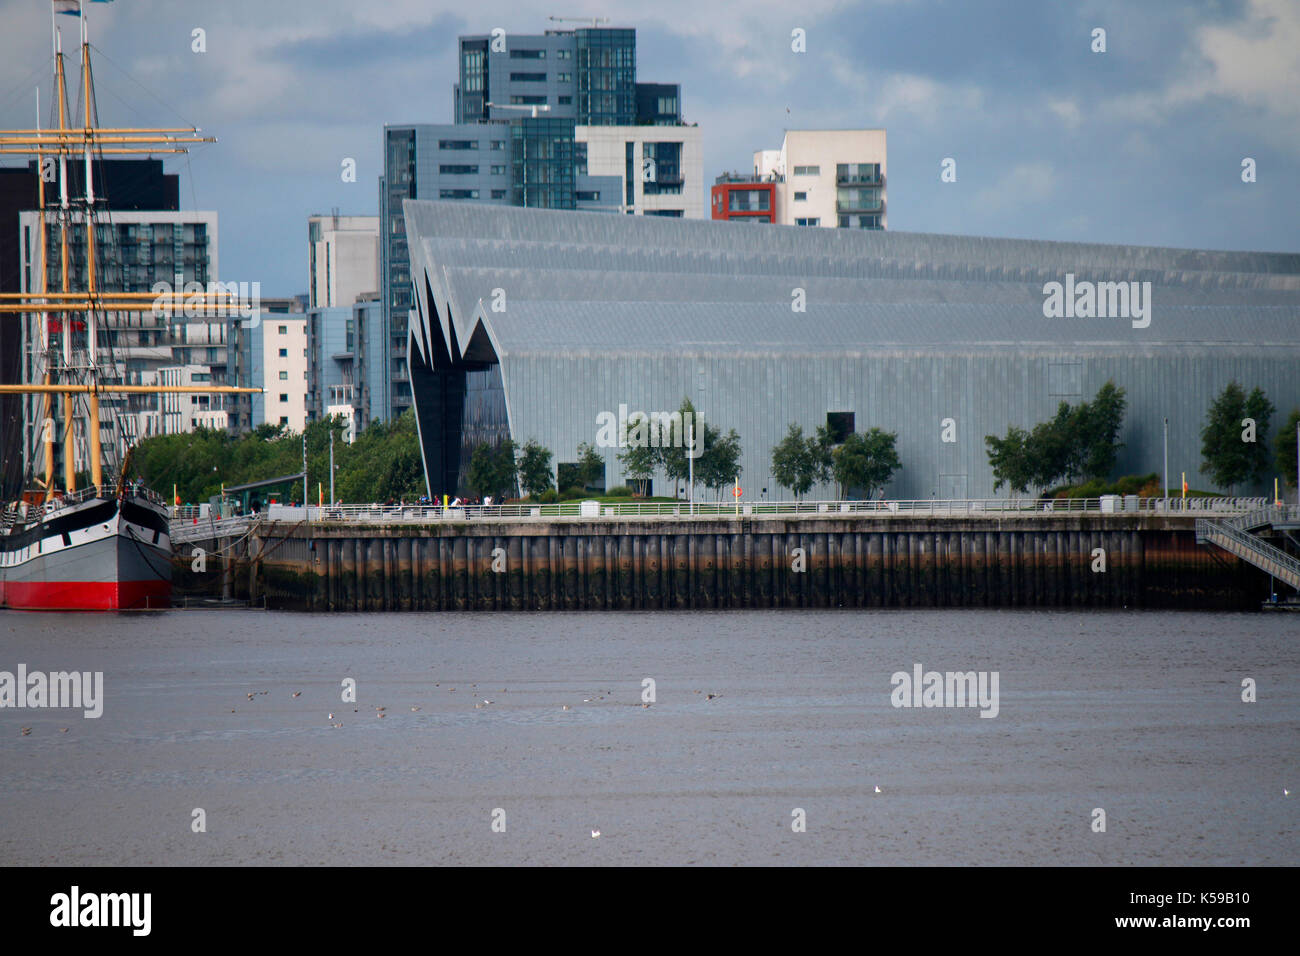 das von Zaha Hadid entworfene Riverside Museum of Transport, Glasgow, Schottland/ Scotland. Stock Photo